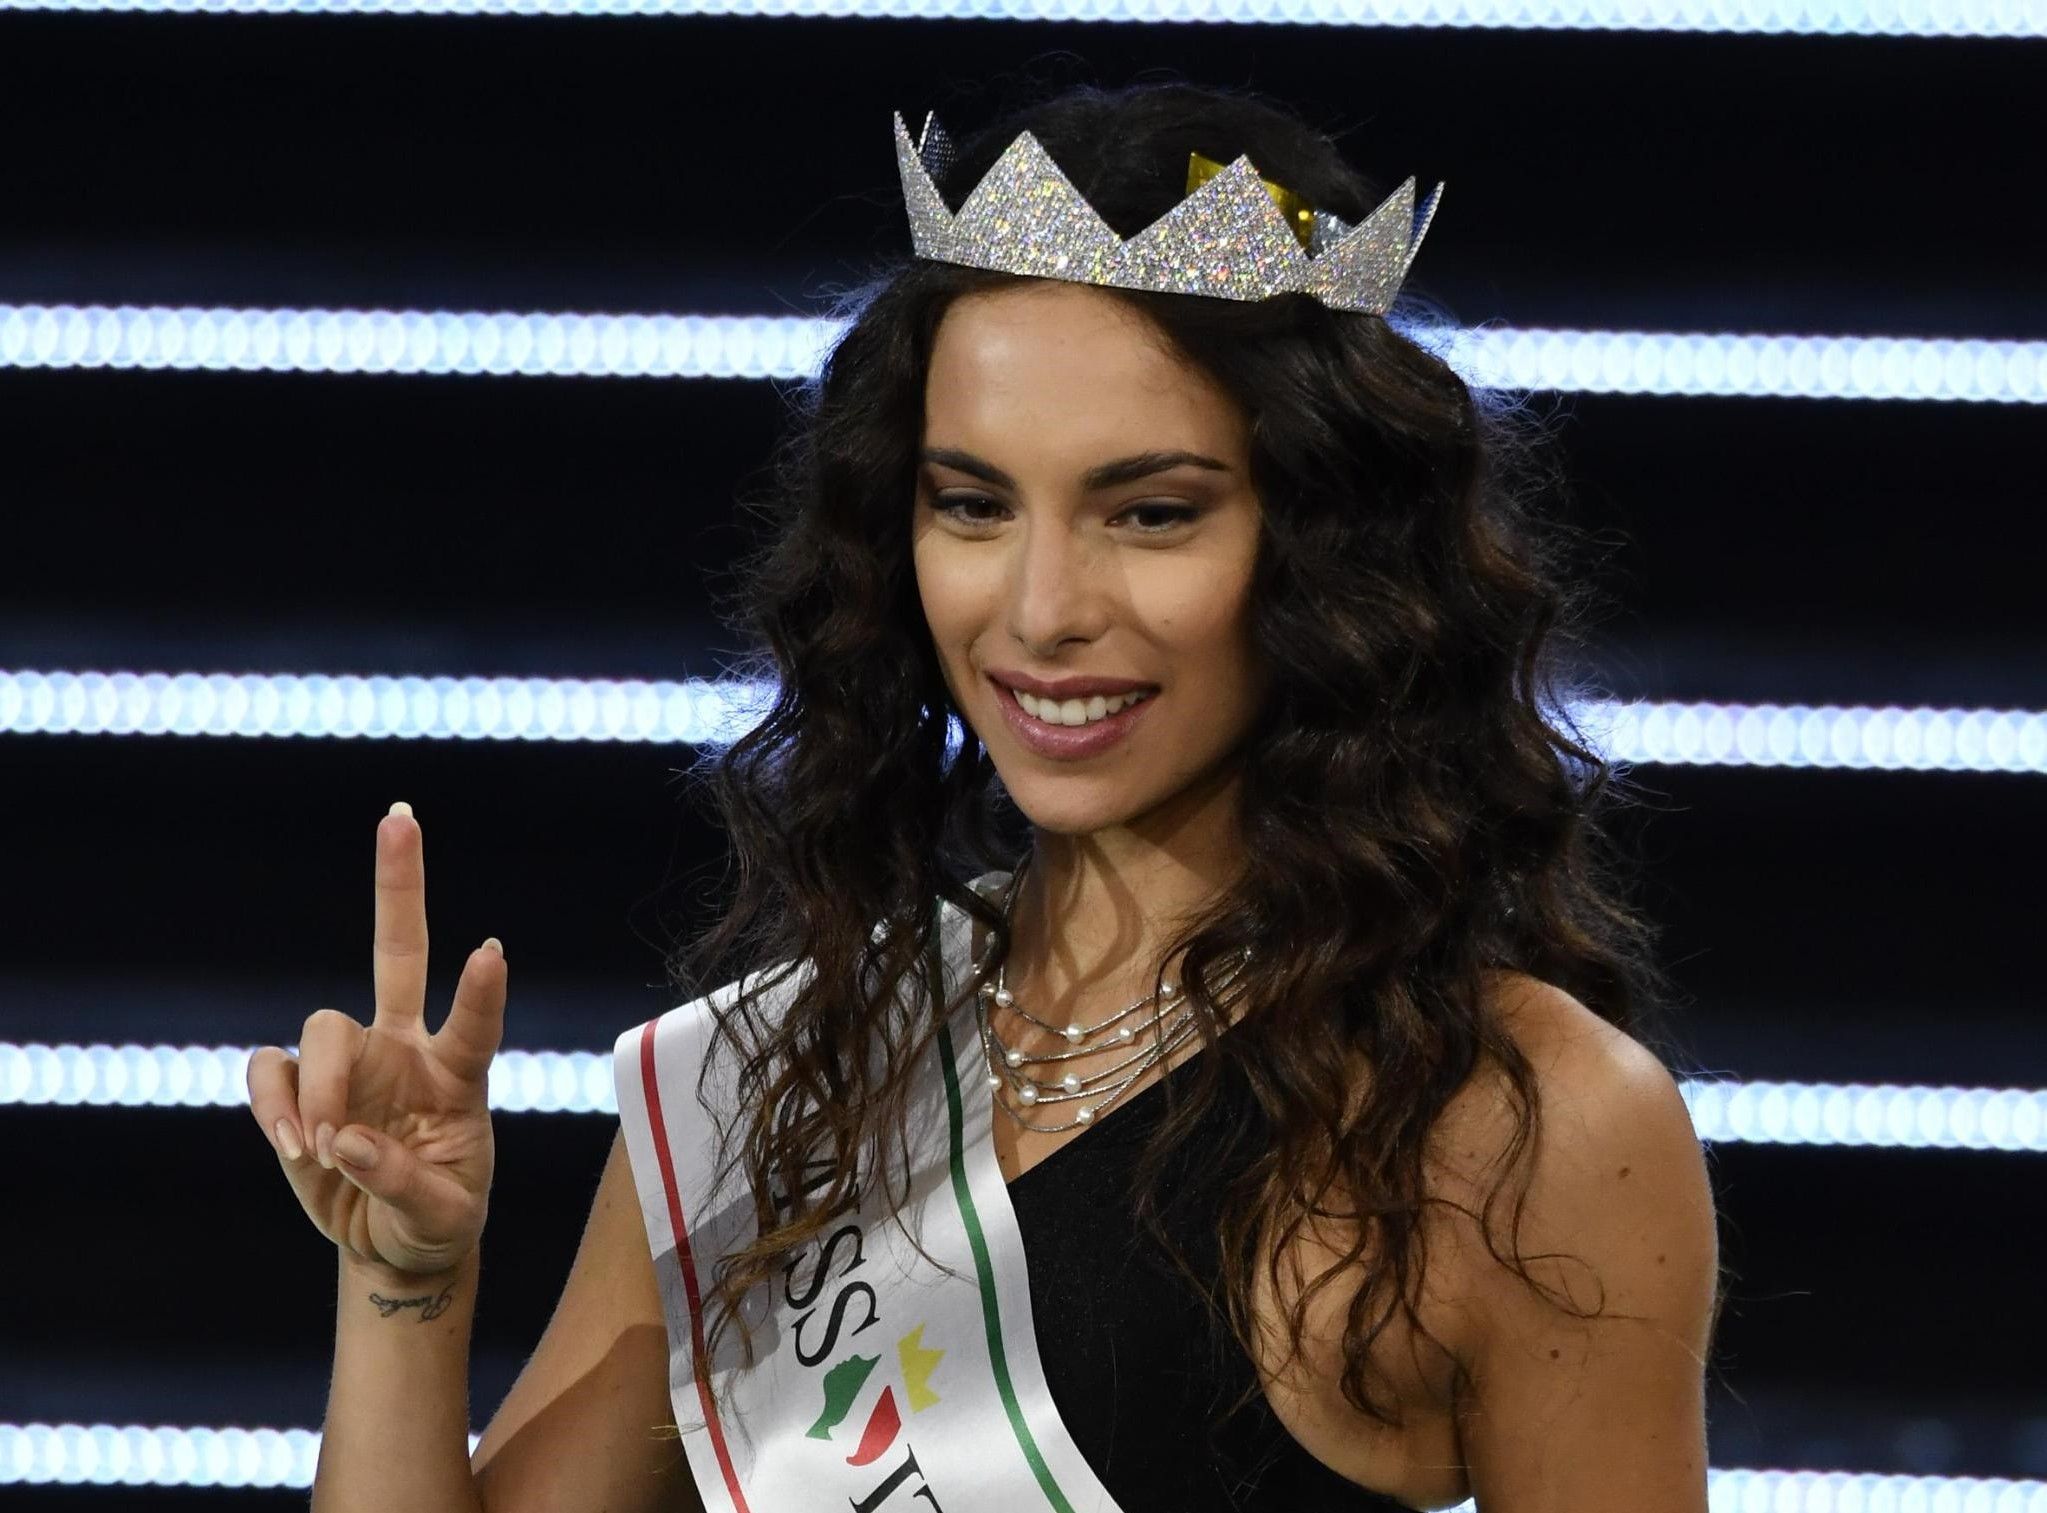 Carlotta Maggiorana, a rischio il titolo di Miss Italia 2018? Scoperte foto senza veli